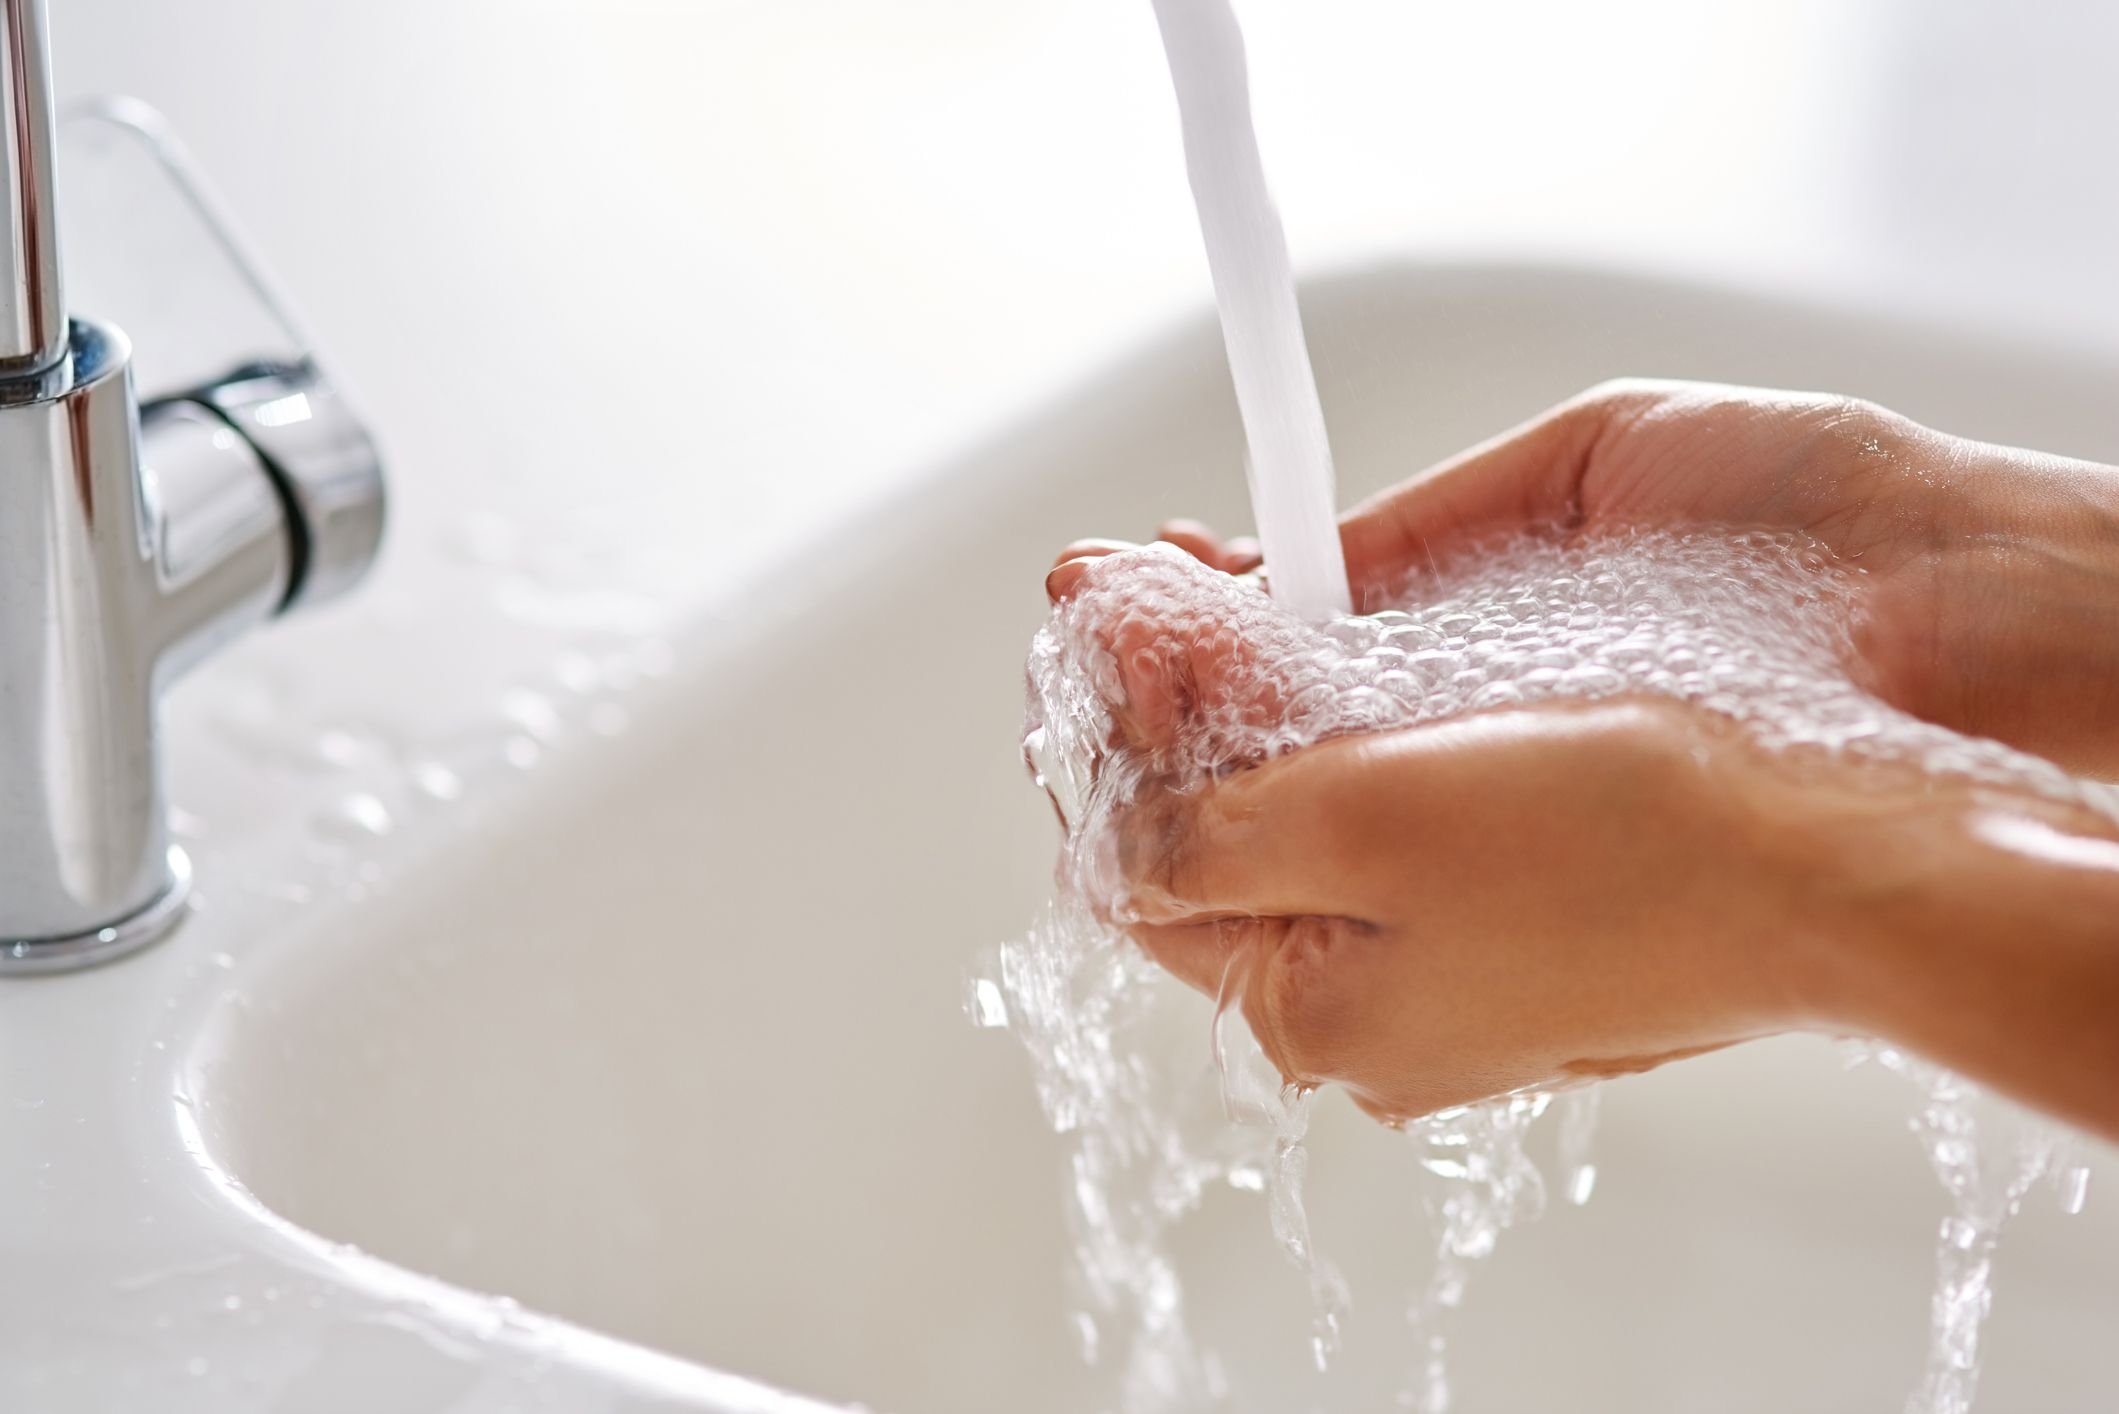 Горячей воды а также. Руки под краном с водой. Мытье рук картинки. Мытье рук под краном. Кран с водой.